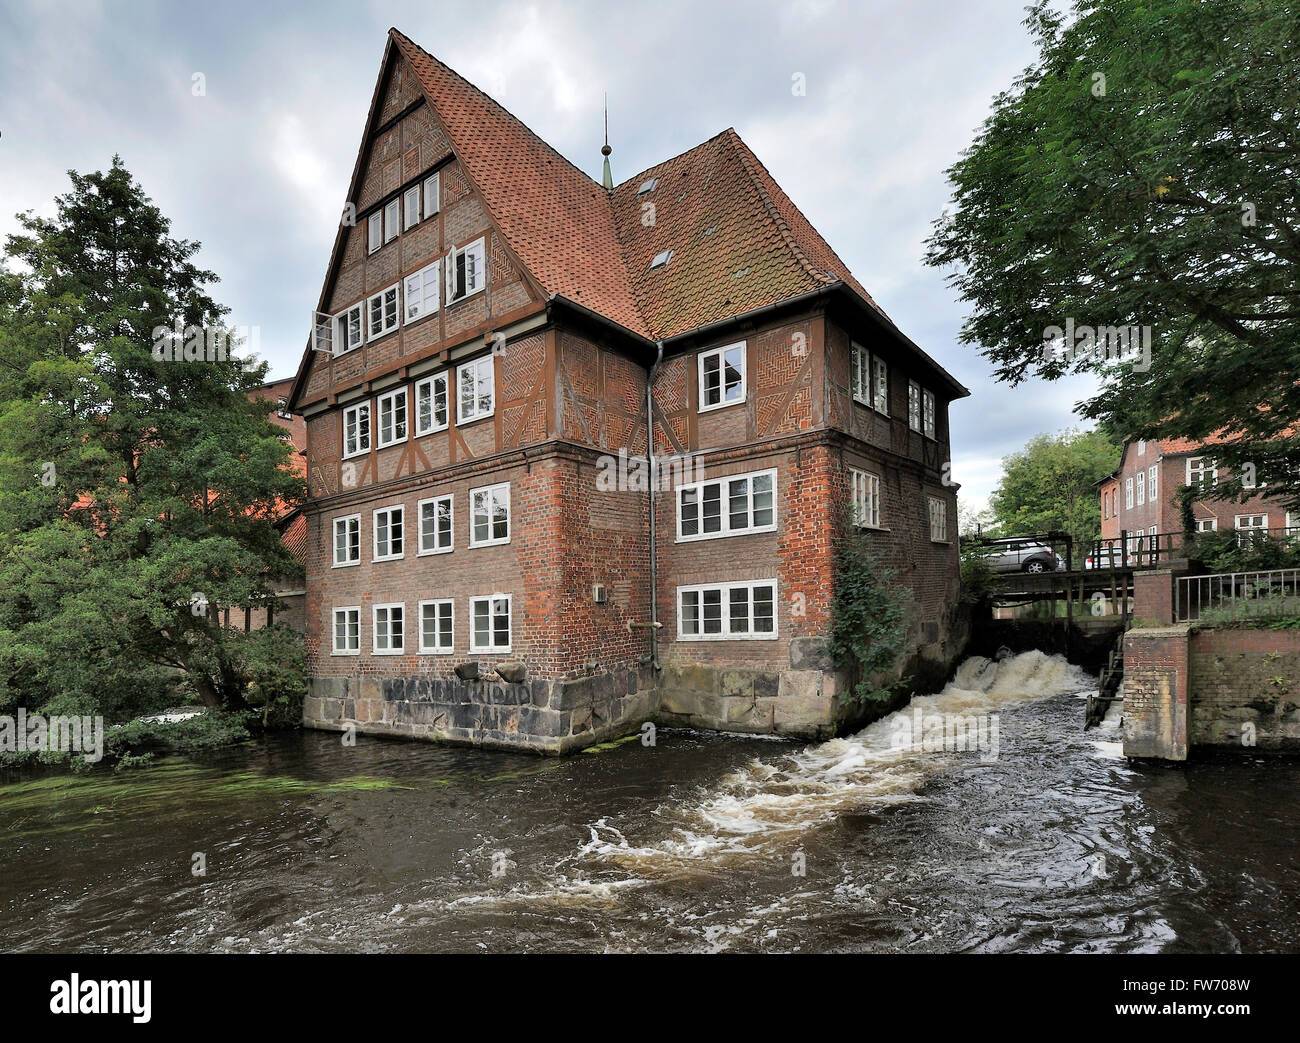 Ratsmuhle building on Ilmenau river, Luneburg, Germany Stock Photo